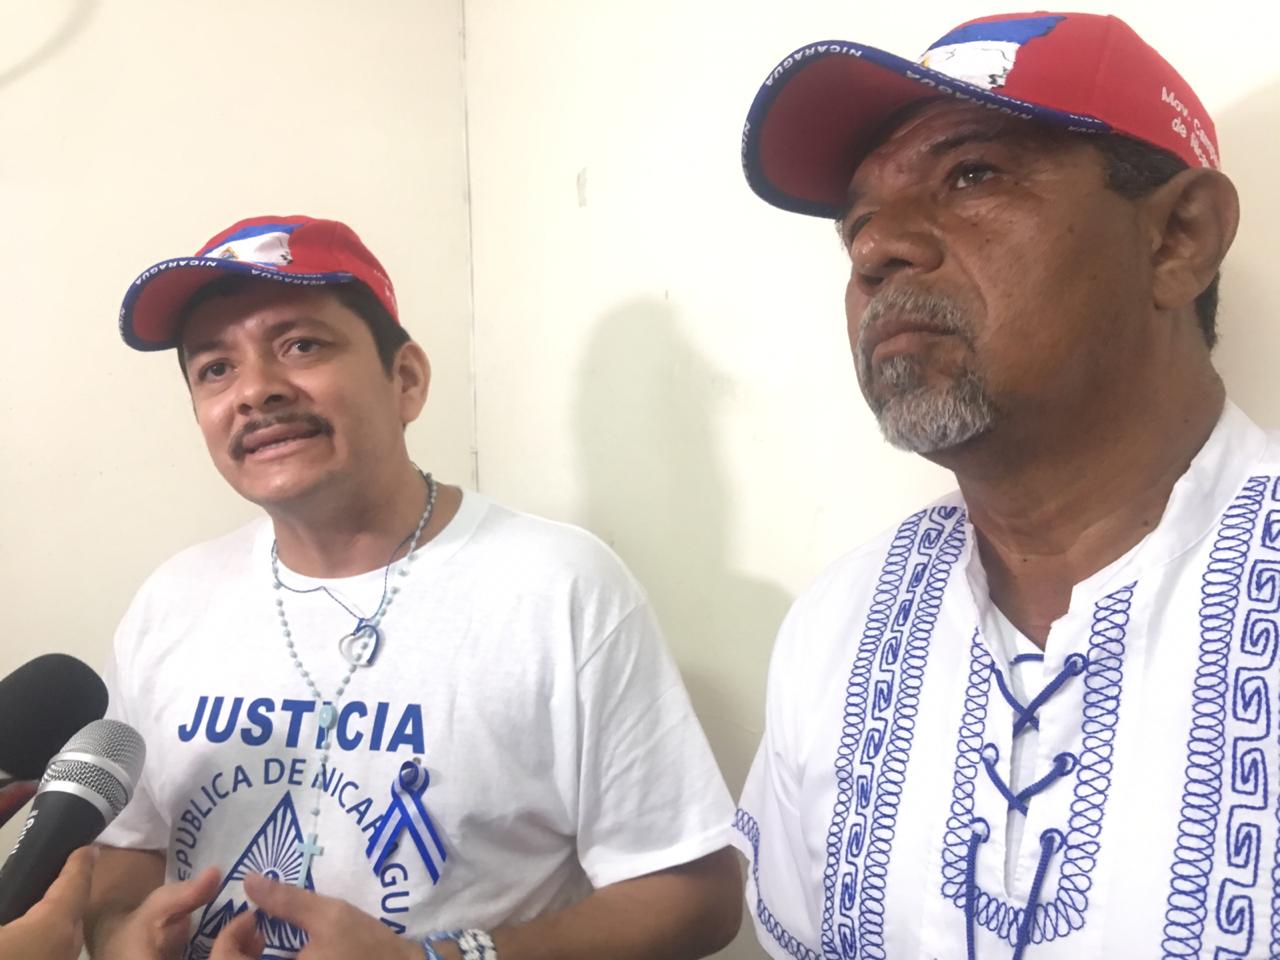 Movimiento Campesino sigue excluido de las decisiones de la Alianza Cívica, aunque son miembros del grupo